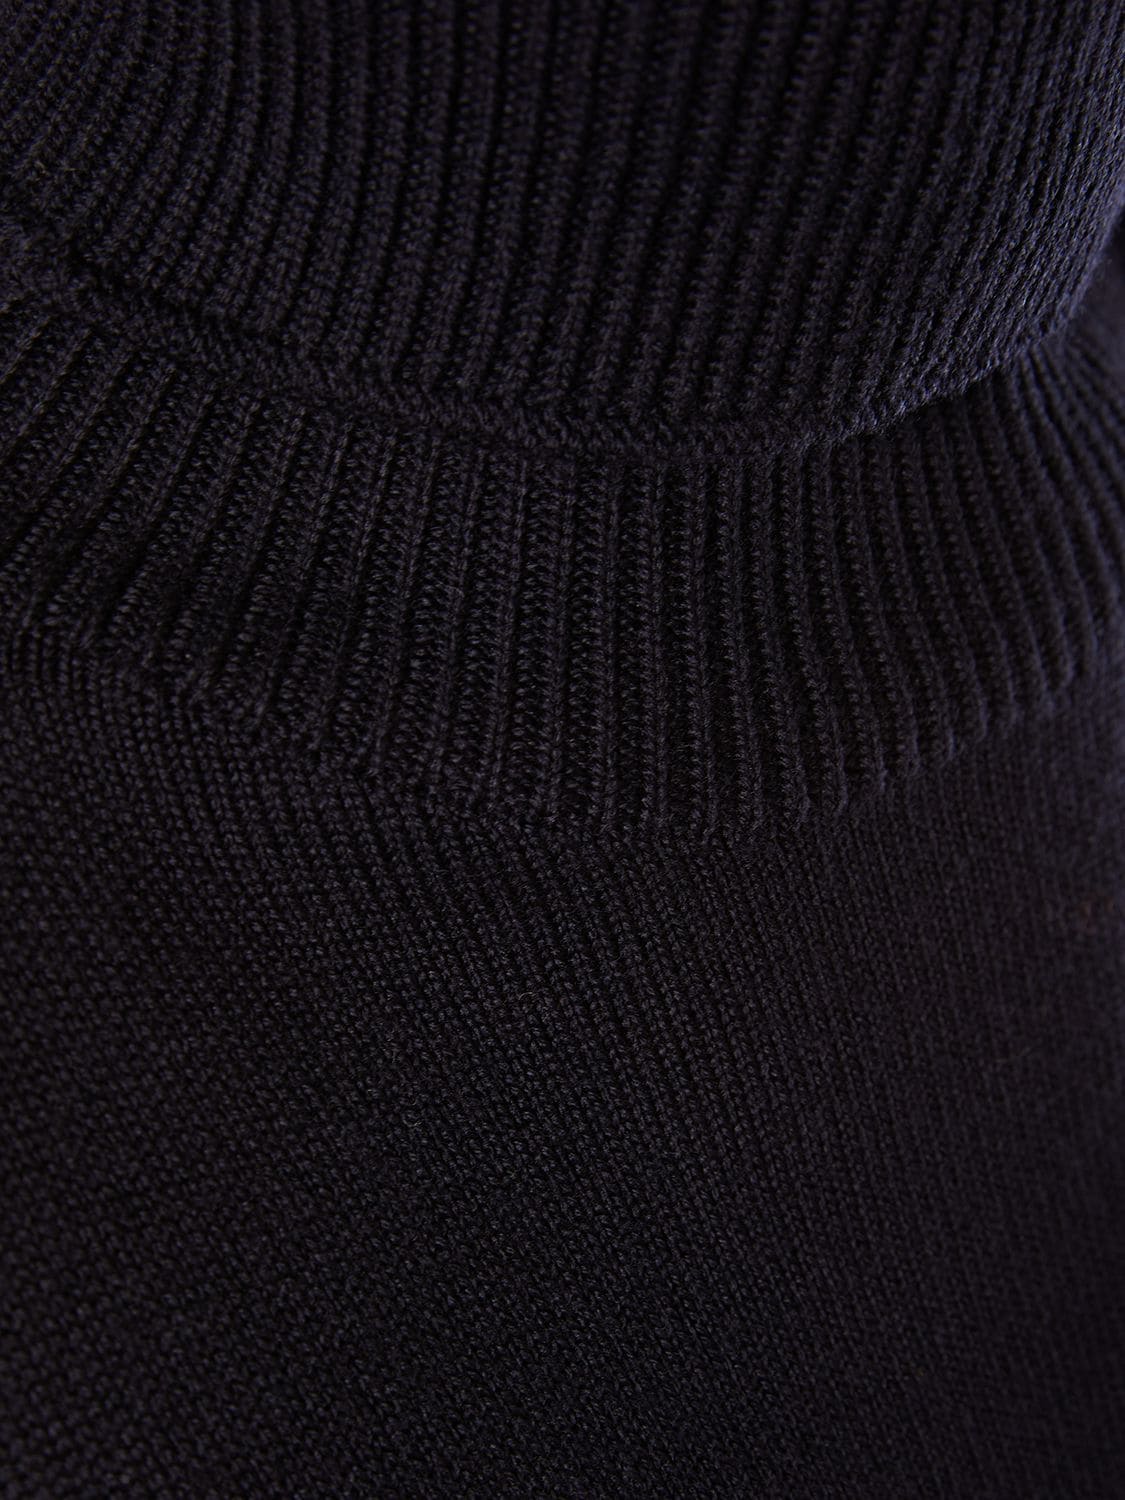 Shop 's Max Mara Brussel Wool Knit Turtleneck Midi Dress In Dark Blue